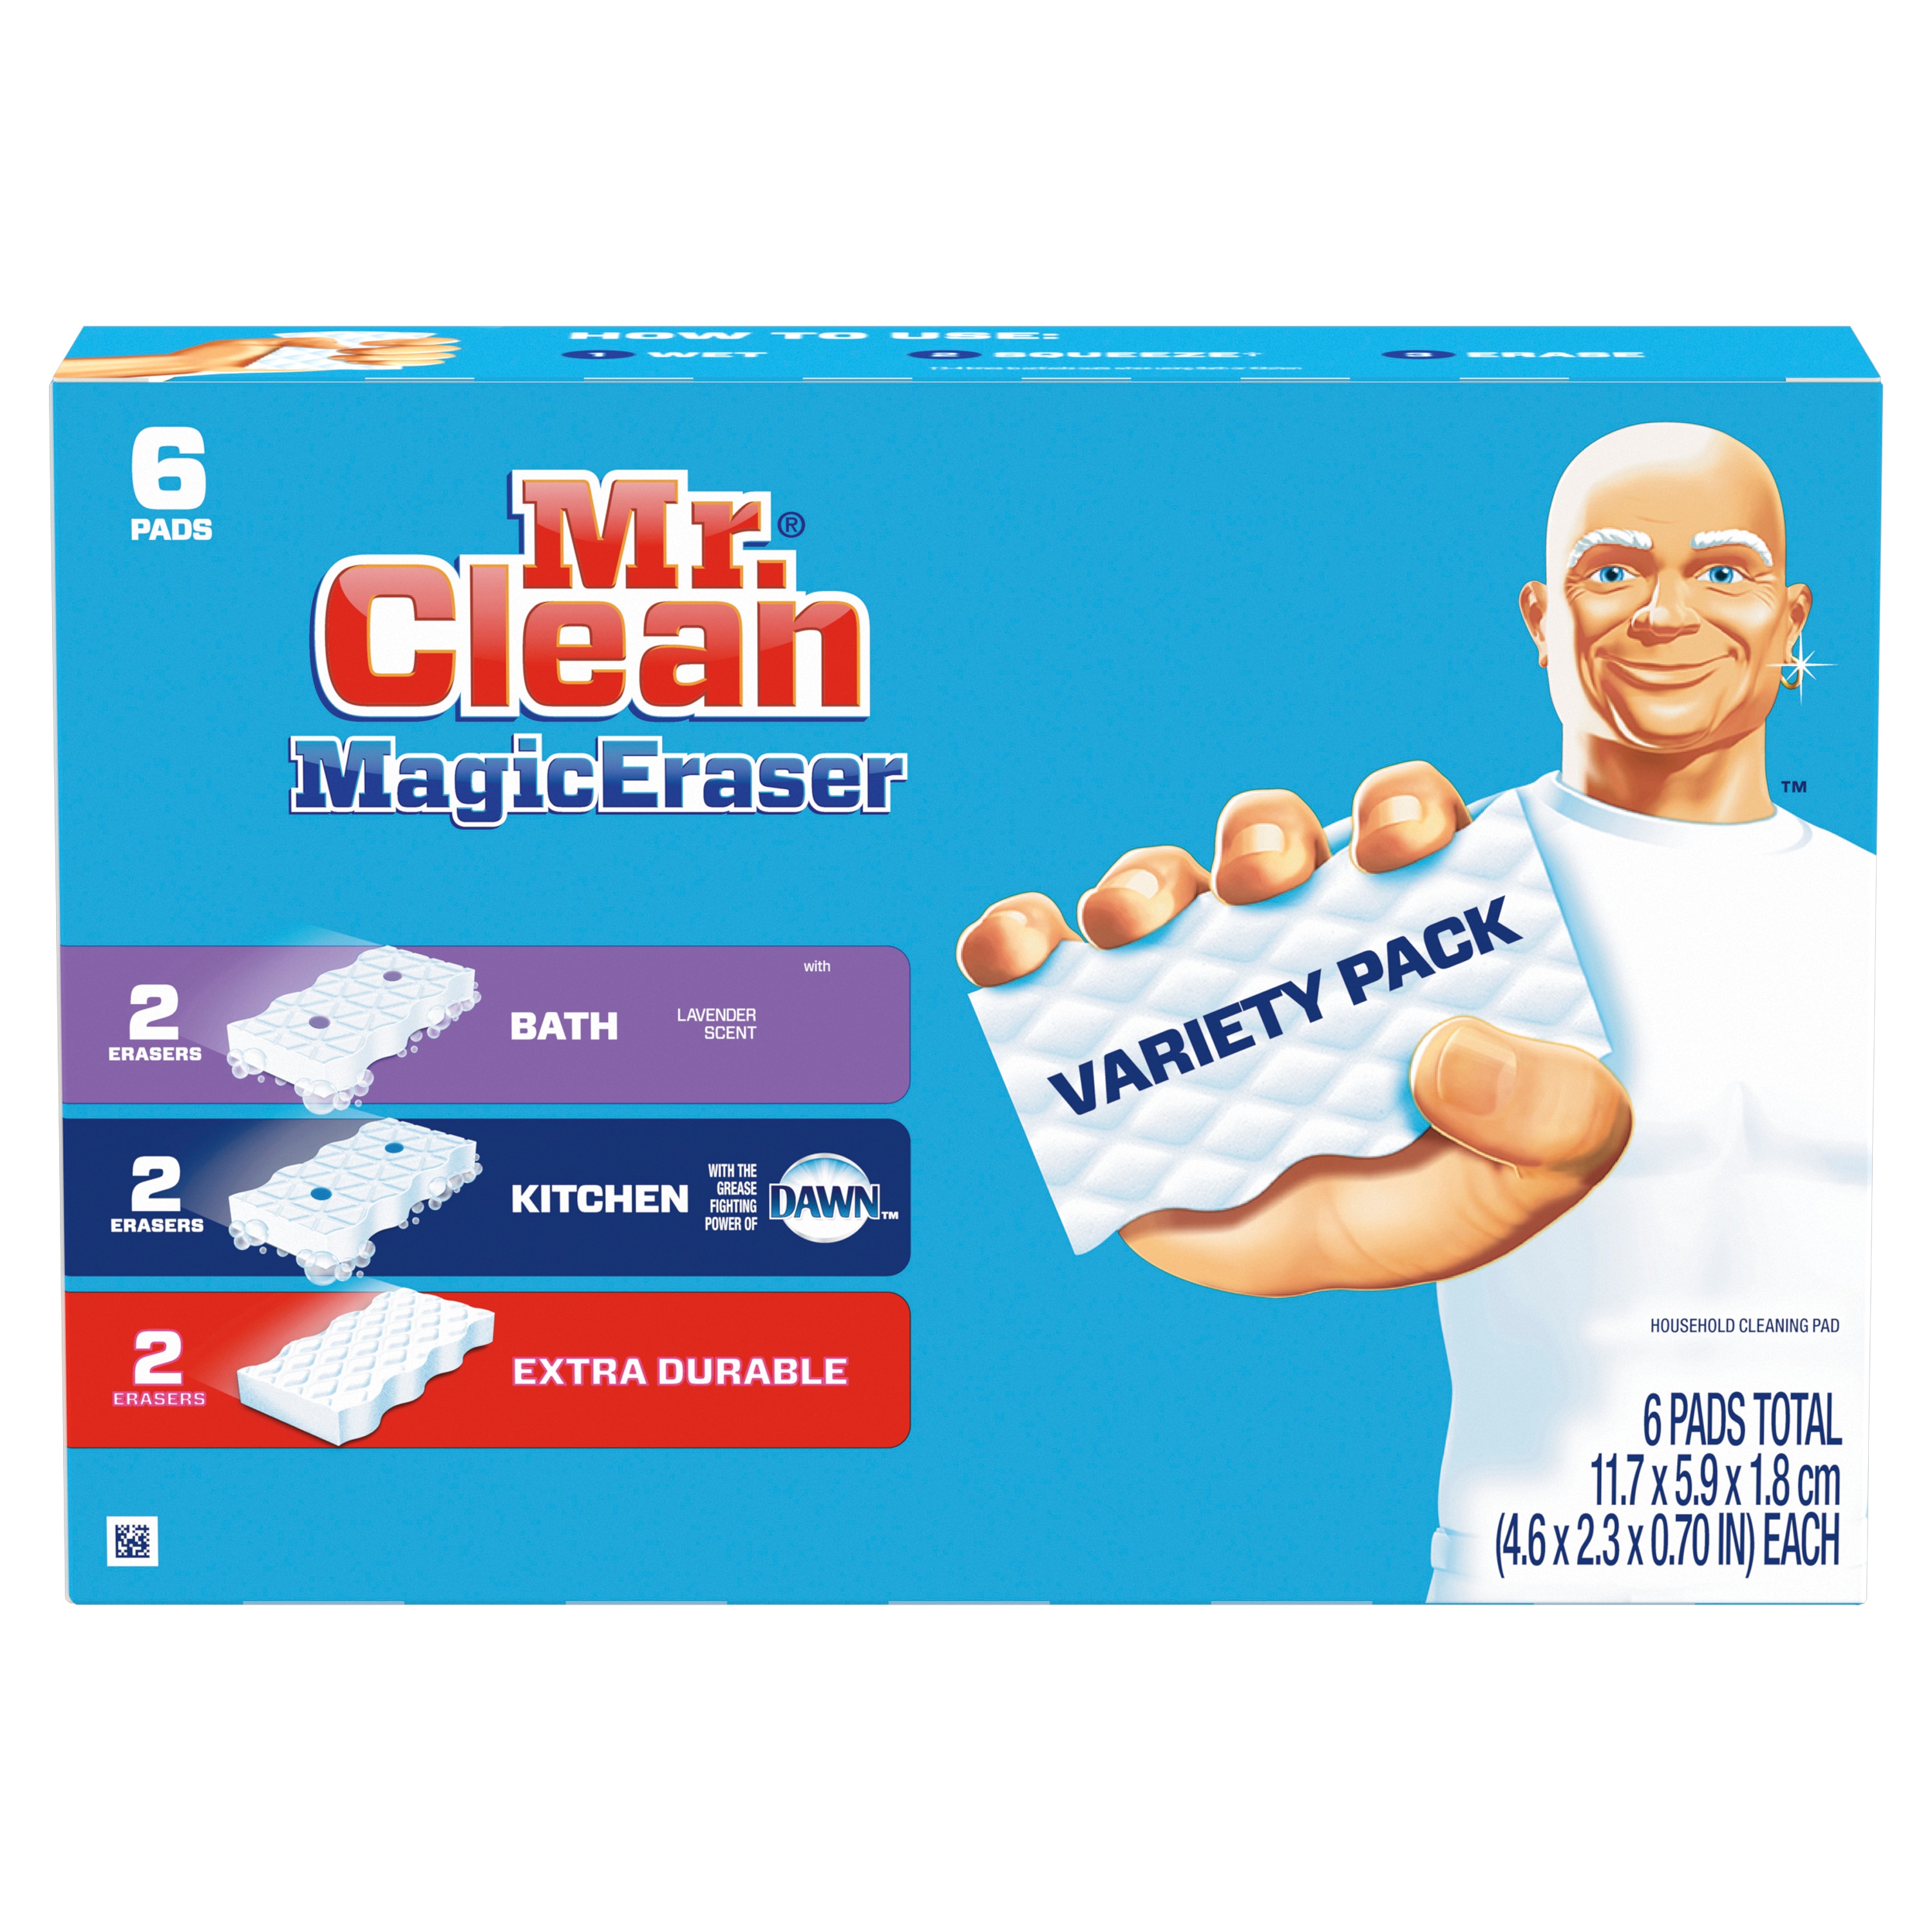 Tham quan bộ sưu tập bông tẩy rửa đa năng Mr. Clean Magic Eraser (6 miếng) để tìm hiểu về sức mạnh và hiệu quả của sản phẩm này trong việc loại bỏ các vết bẩn khó nhất! Cùng xem hình ảnh để nhận được những gợi ý hữu ích.